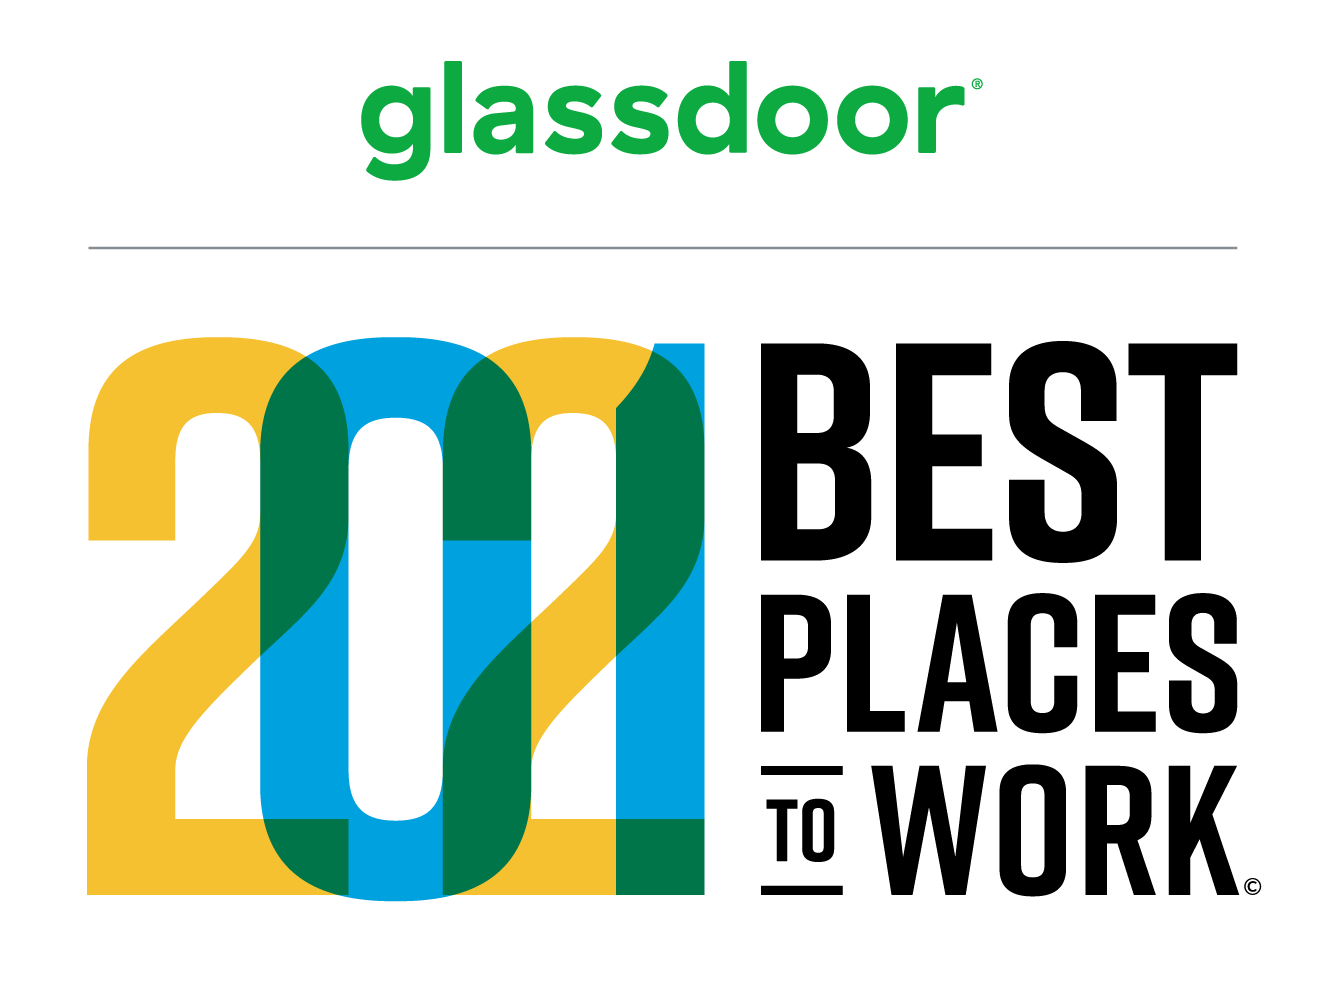 Melhores lugares para trabalhar — Glassdoor 2021